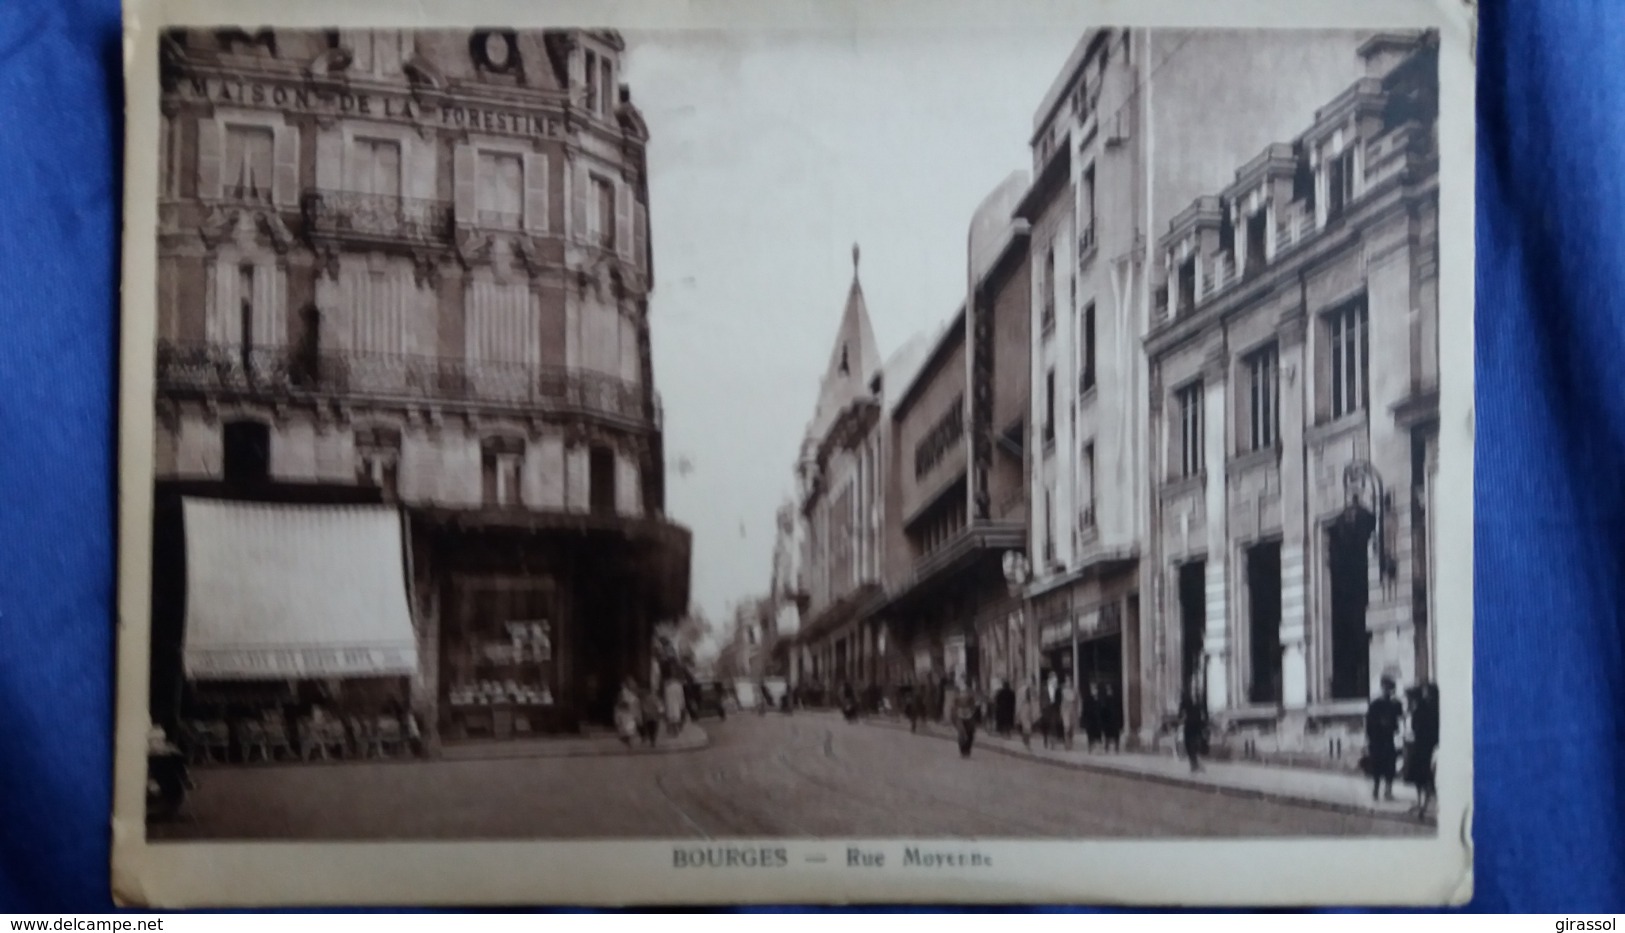 CPSM BOURGES CHER RUE MOYENNE CAFE DES BEAUX ARTS MONOPRIX 1948 ED DUTARD - Bourges